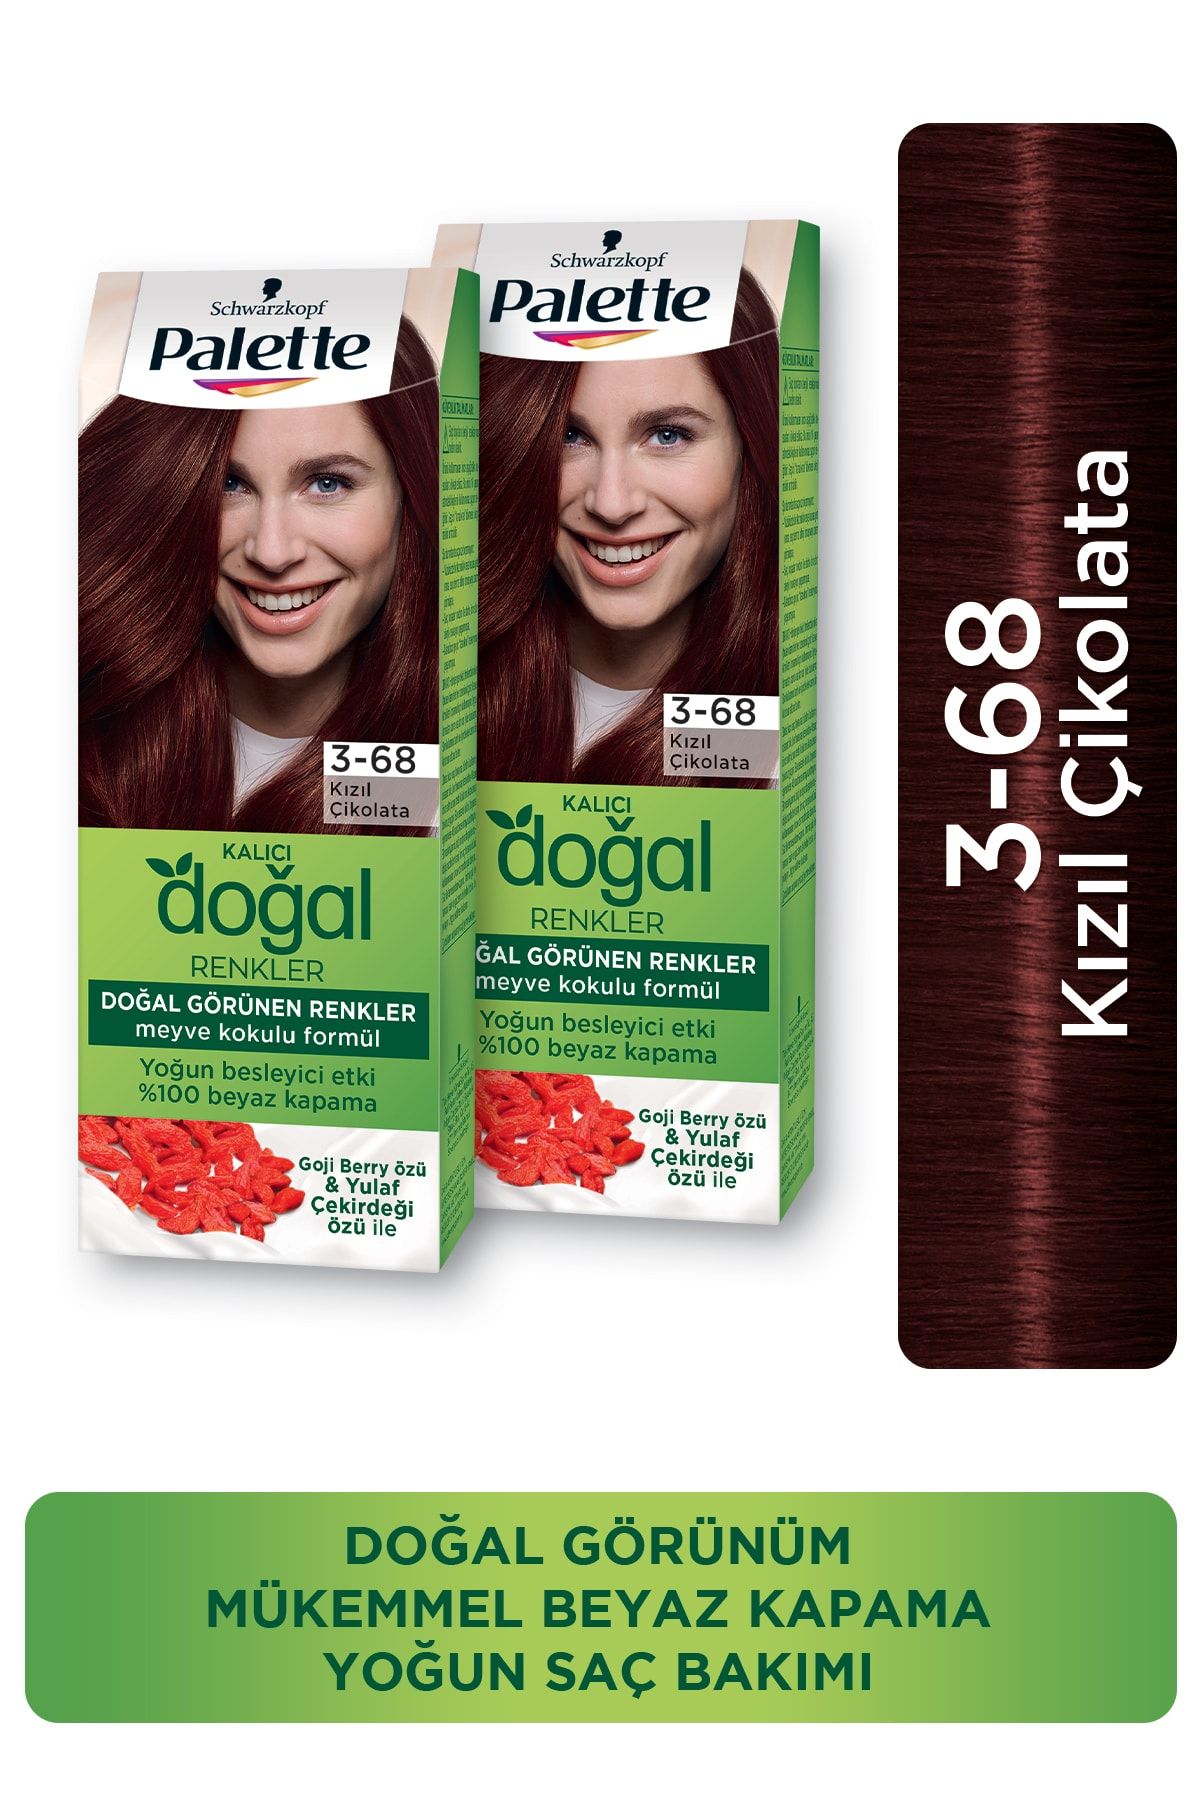 Palette Kalıcı Doğal Renkler 3-68 Kızıl Çikolata X 2 Adet